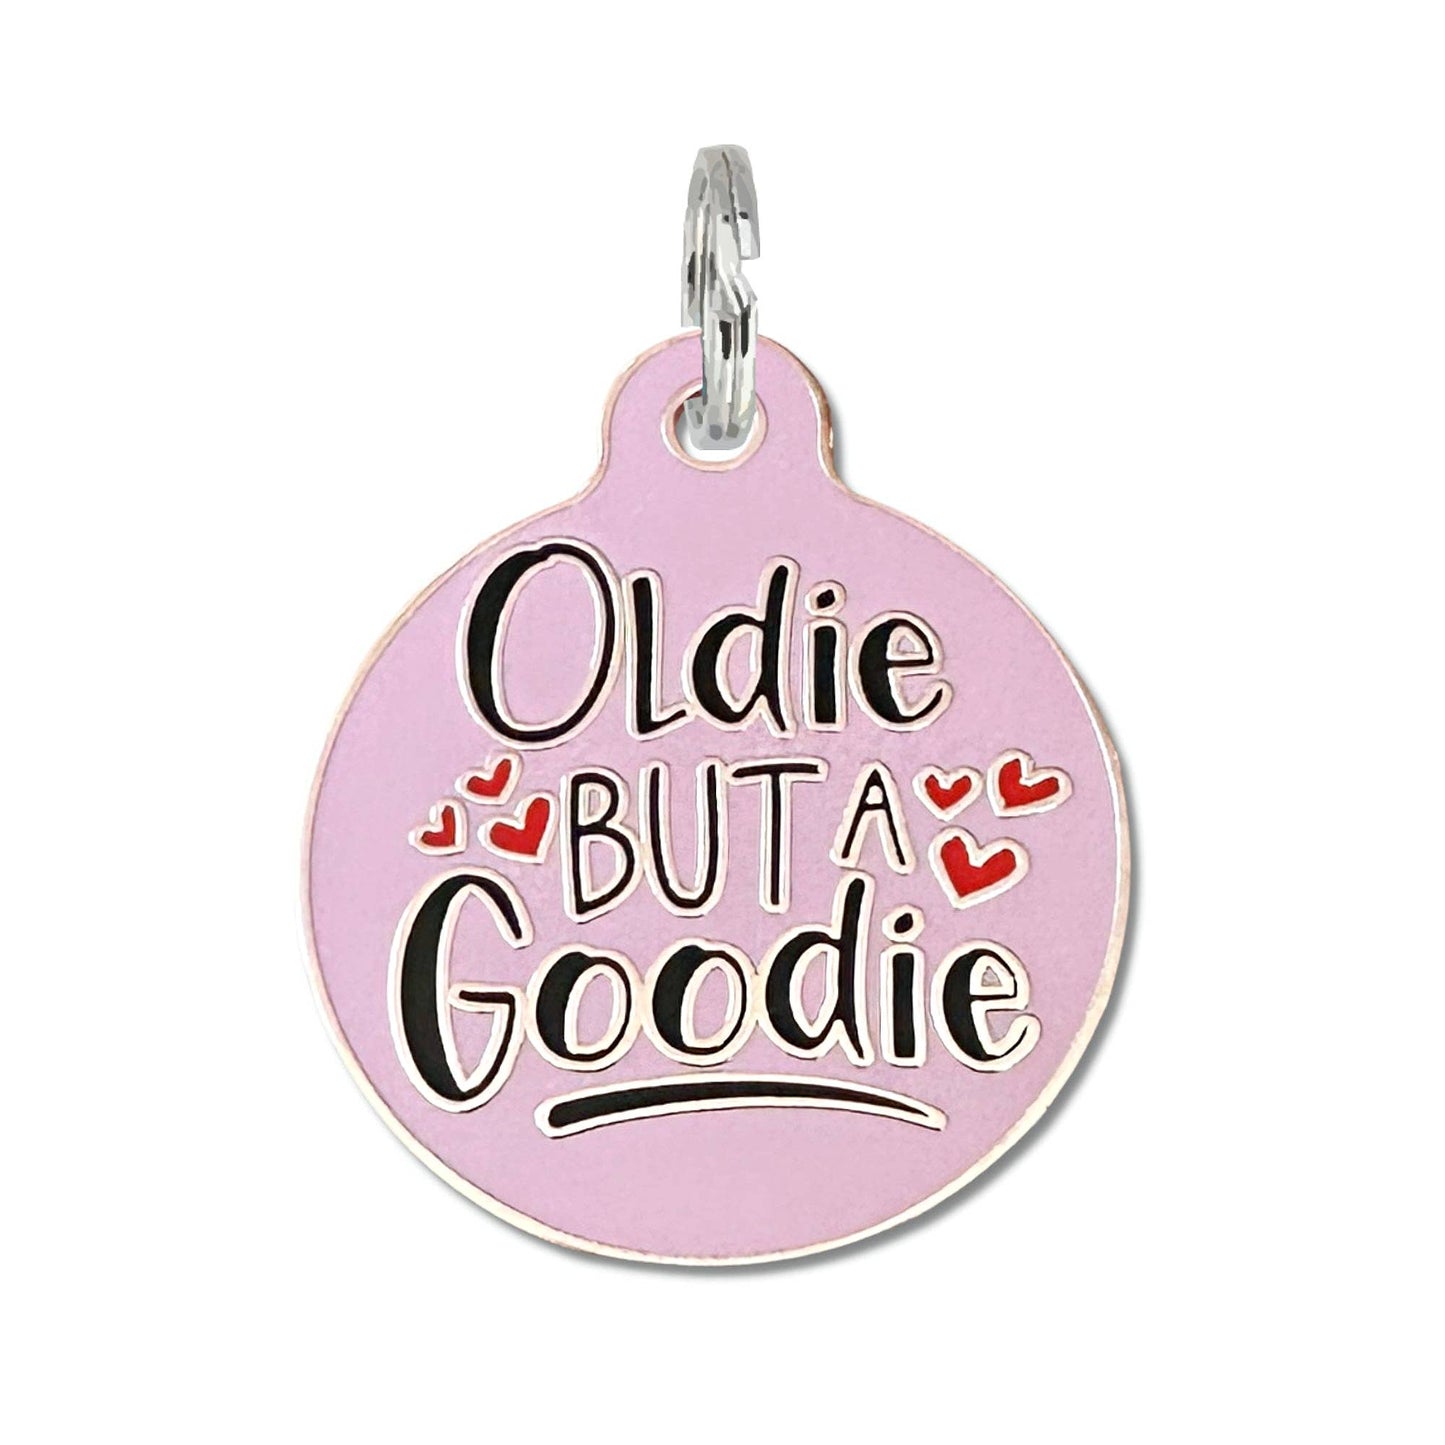 Oldie but a Goodie - Pet ID Tag